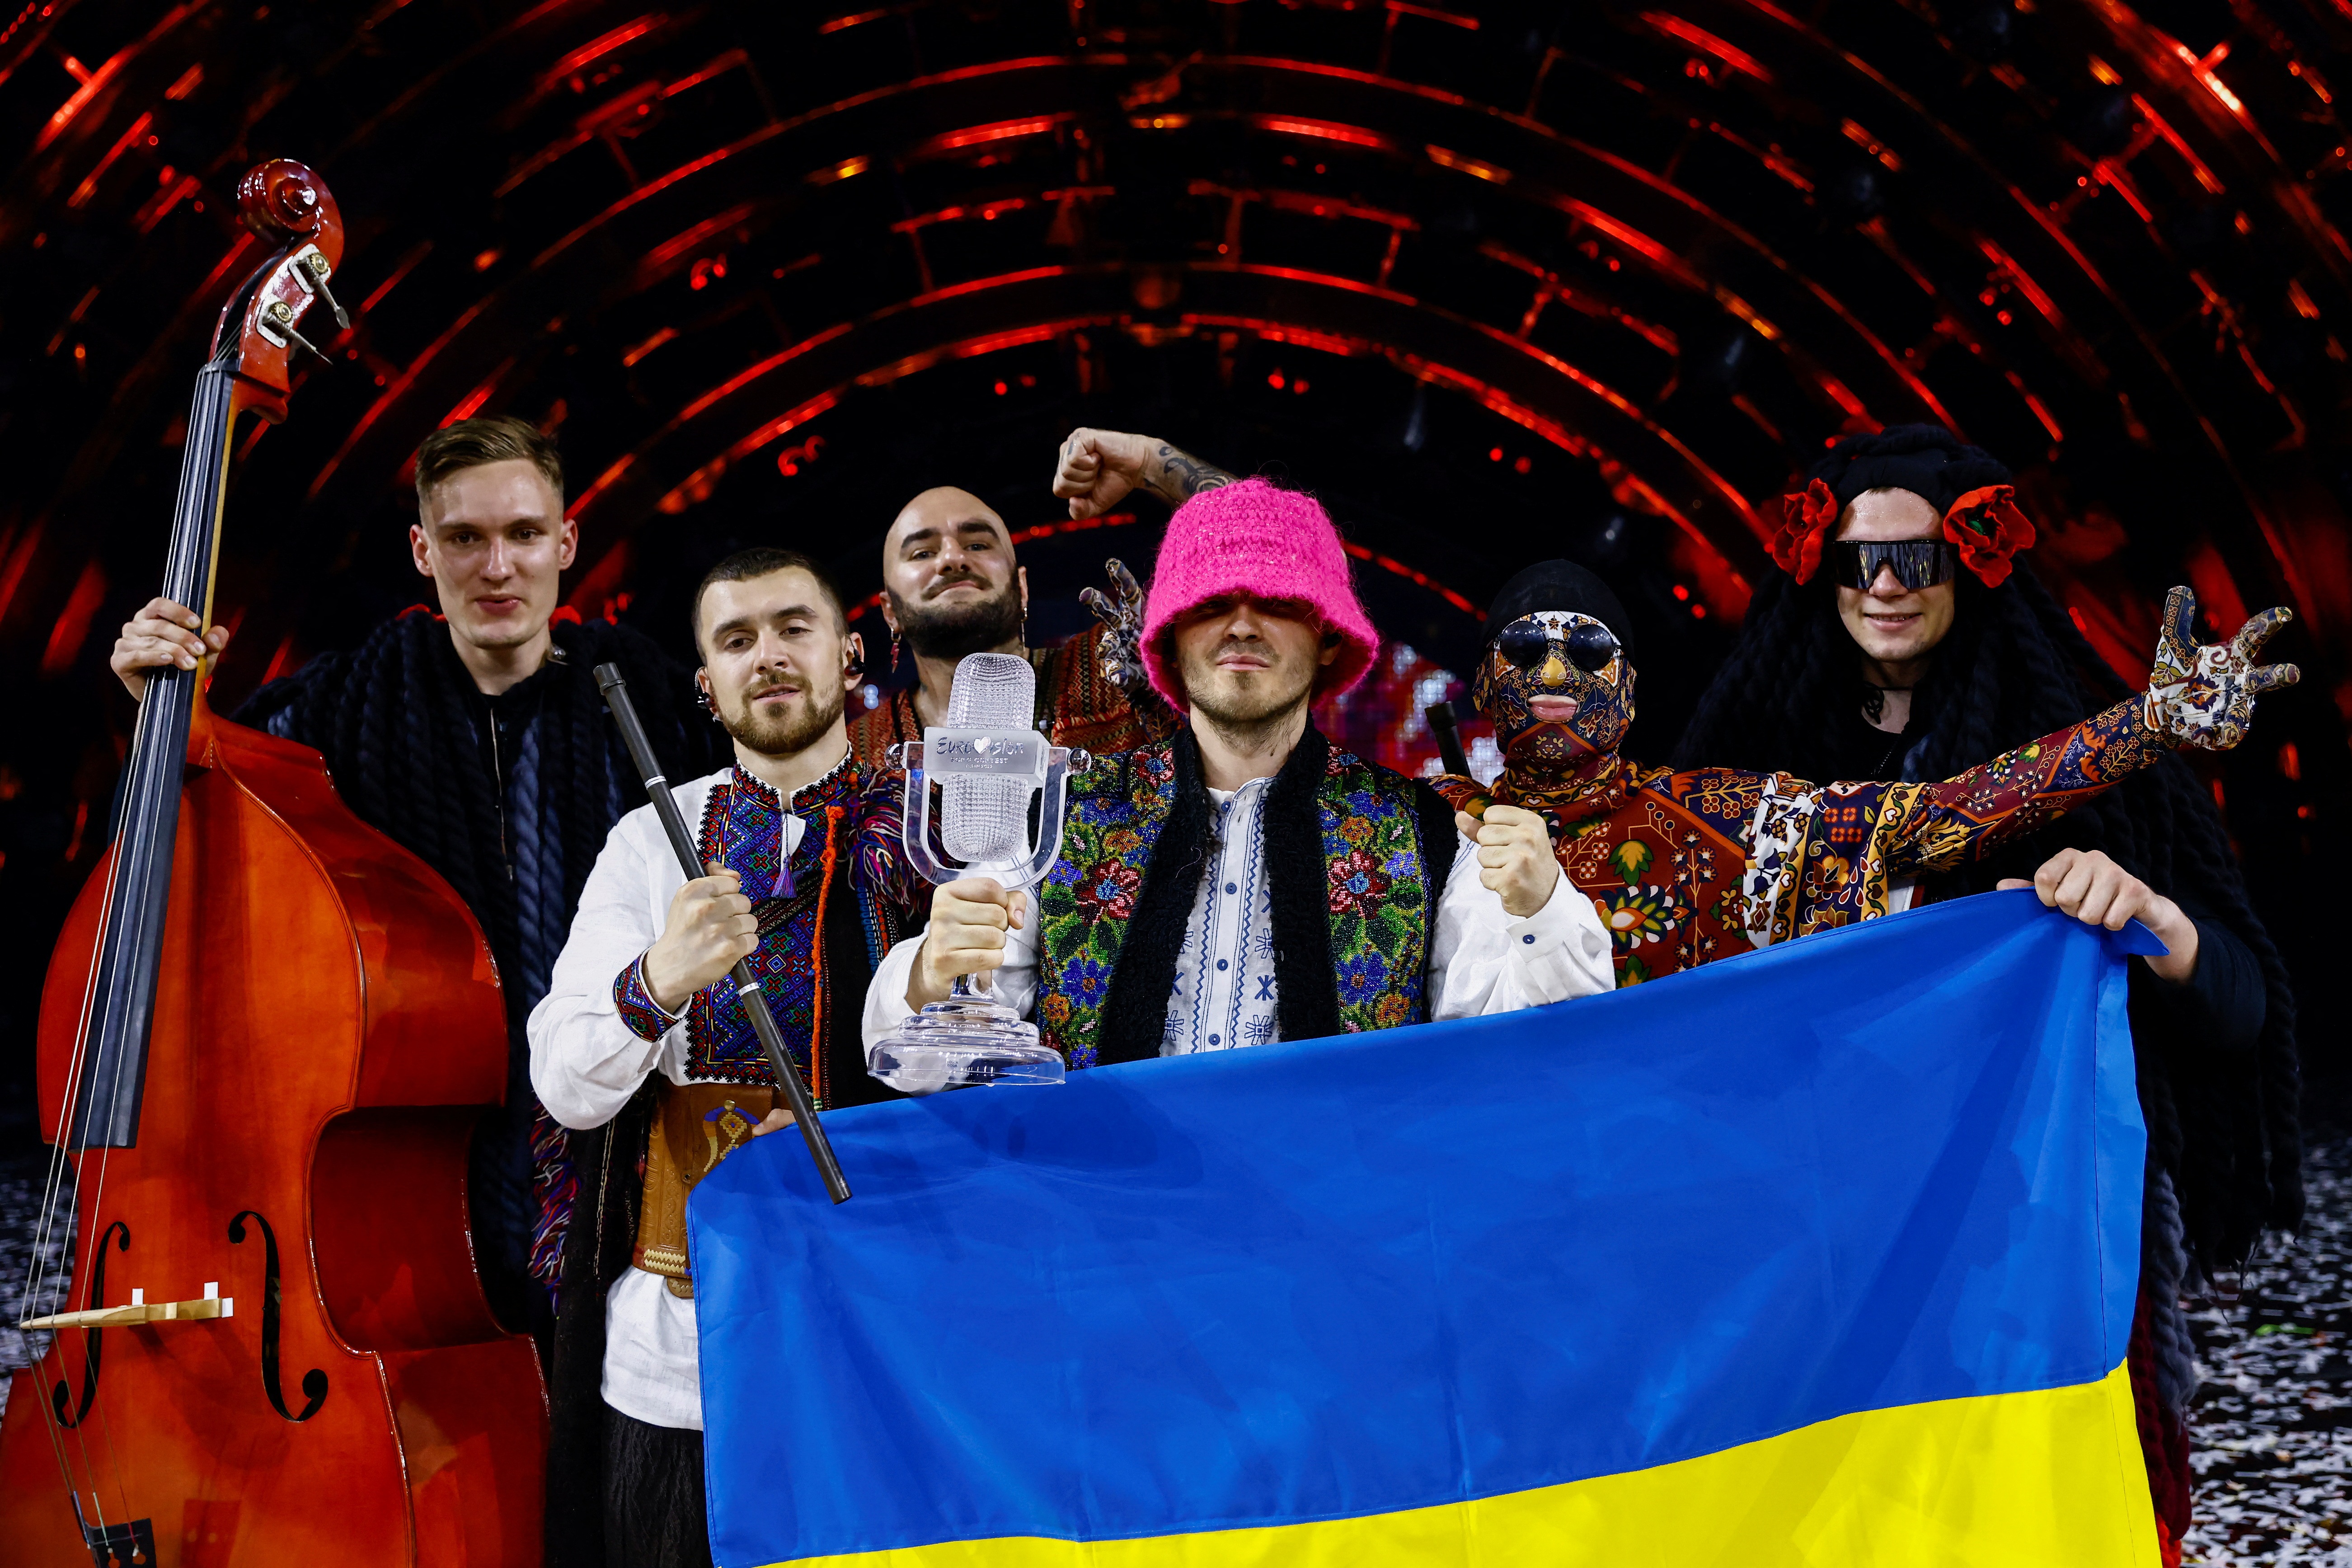 La OTAN felicitó este domingo a Ucrania por su victoria en el festival de Eurovisión, celebrado el sábado en Italia, y consideró que ello muestra el “inmenso apoyo público”